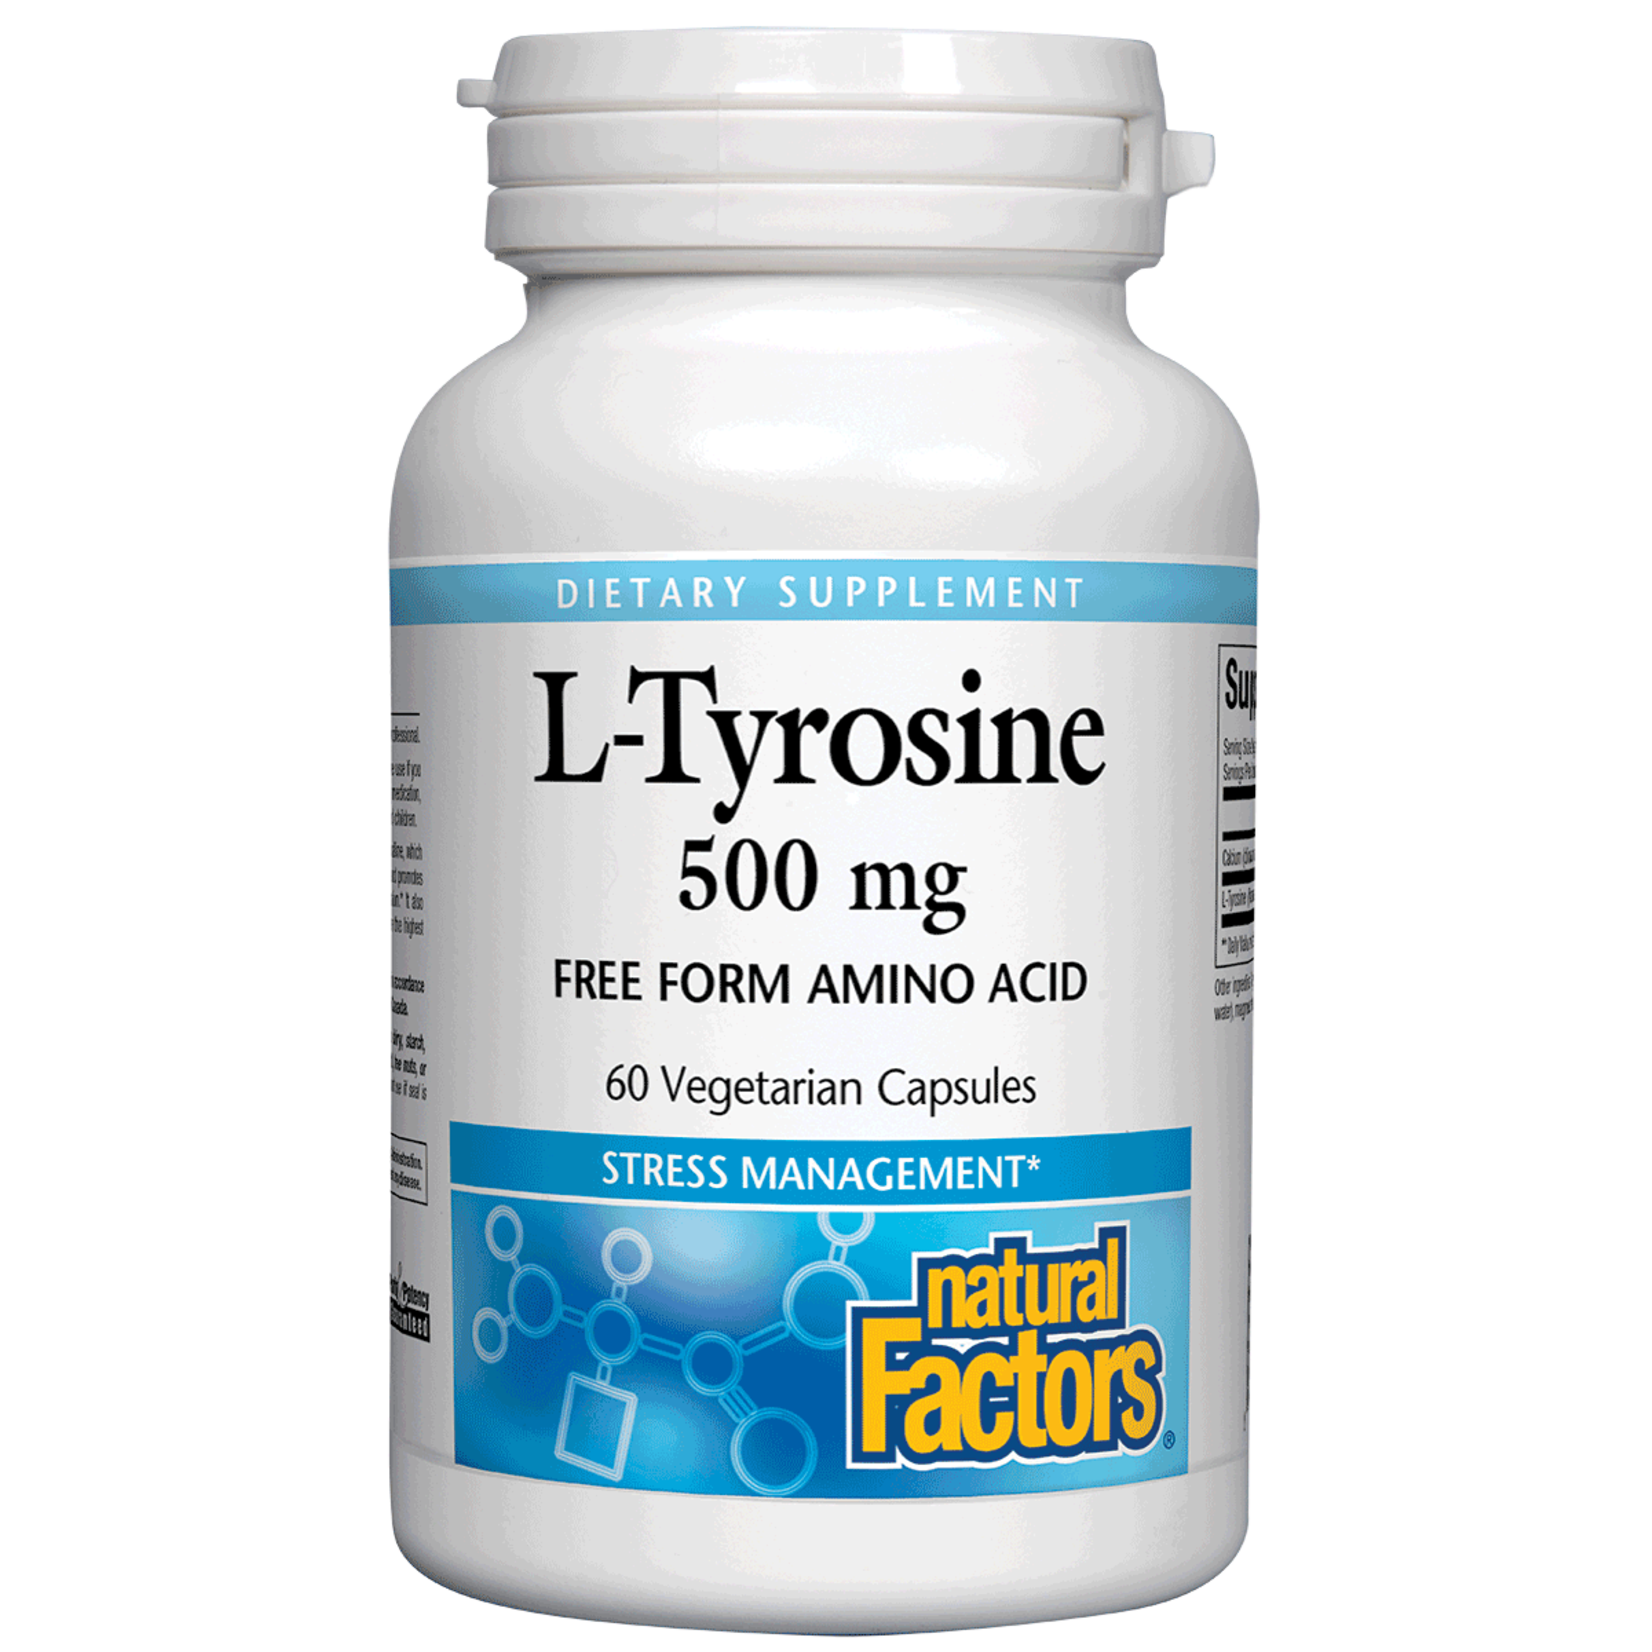 Natural Factors Natural Factors - L-Tyrosine 500 mg - 60 Veg Capsules